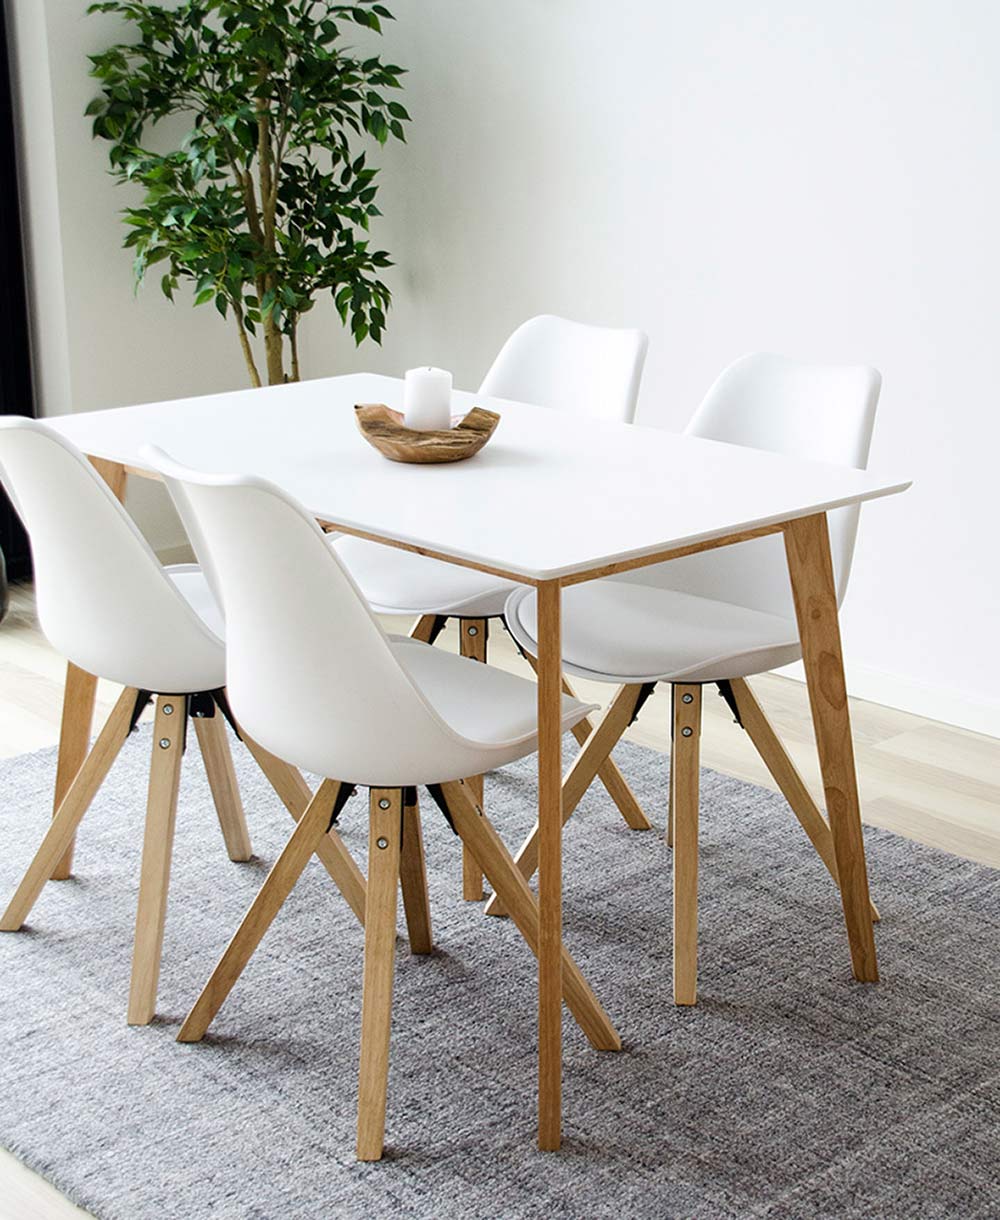 Skandináv stílusú étkező fehér étkezőasztallal és négy darab kagylóformájú székkel.